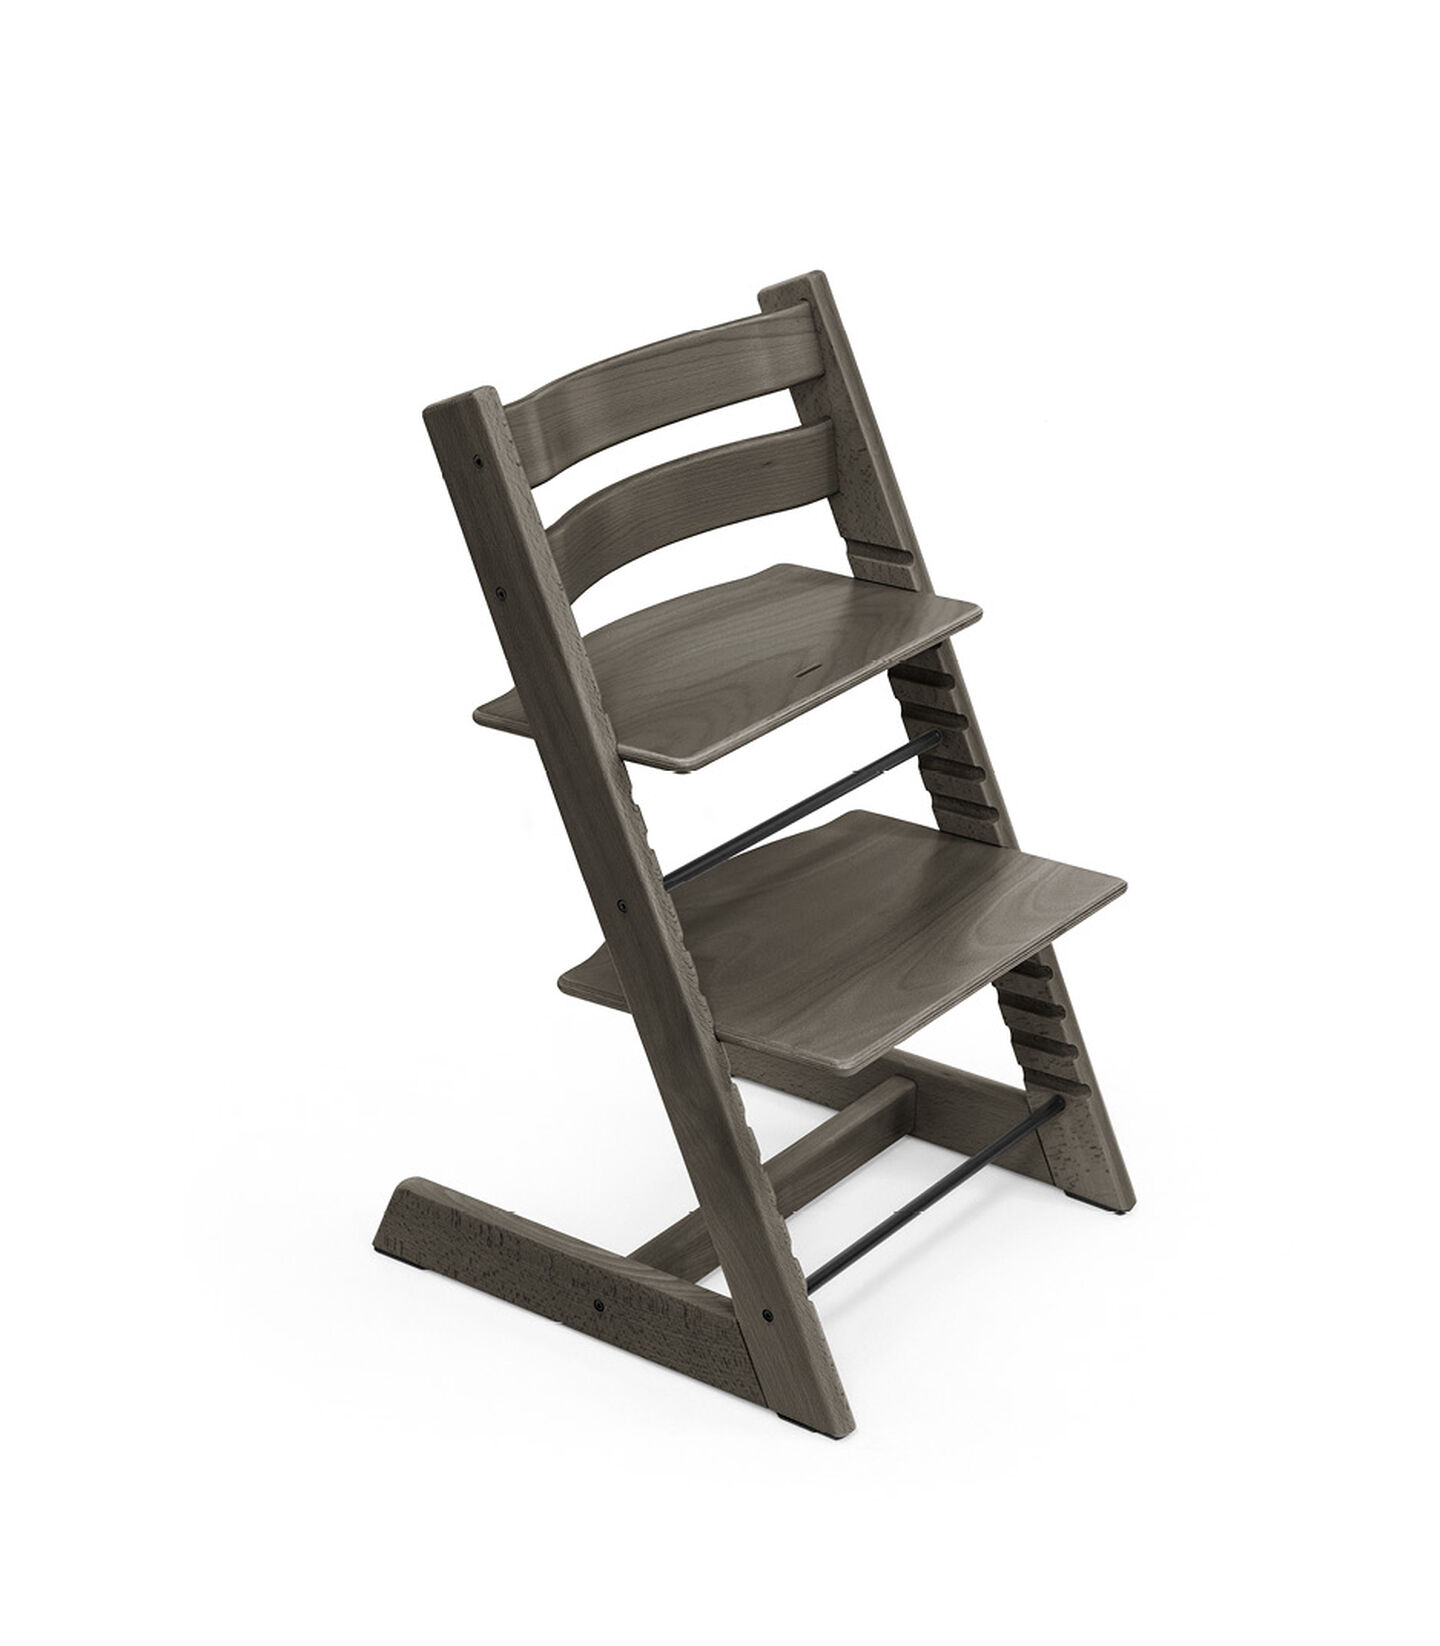 Tripp Trapp® Chair Hazy Grey, Hazy Grey, mainview view 1